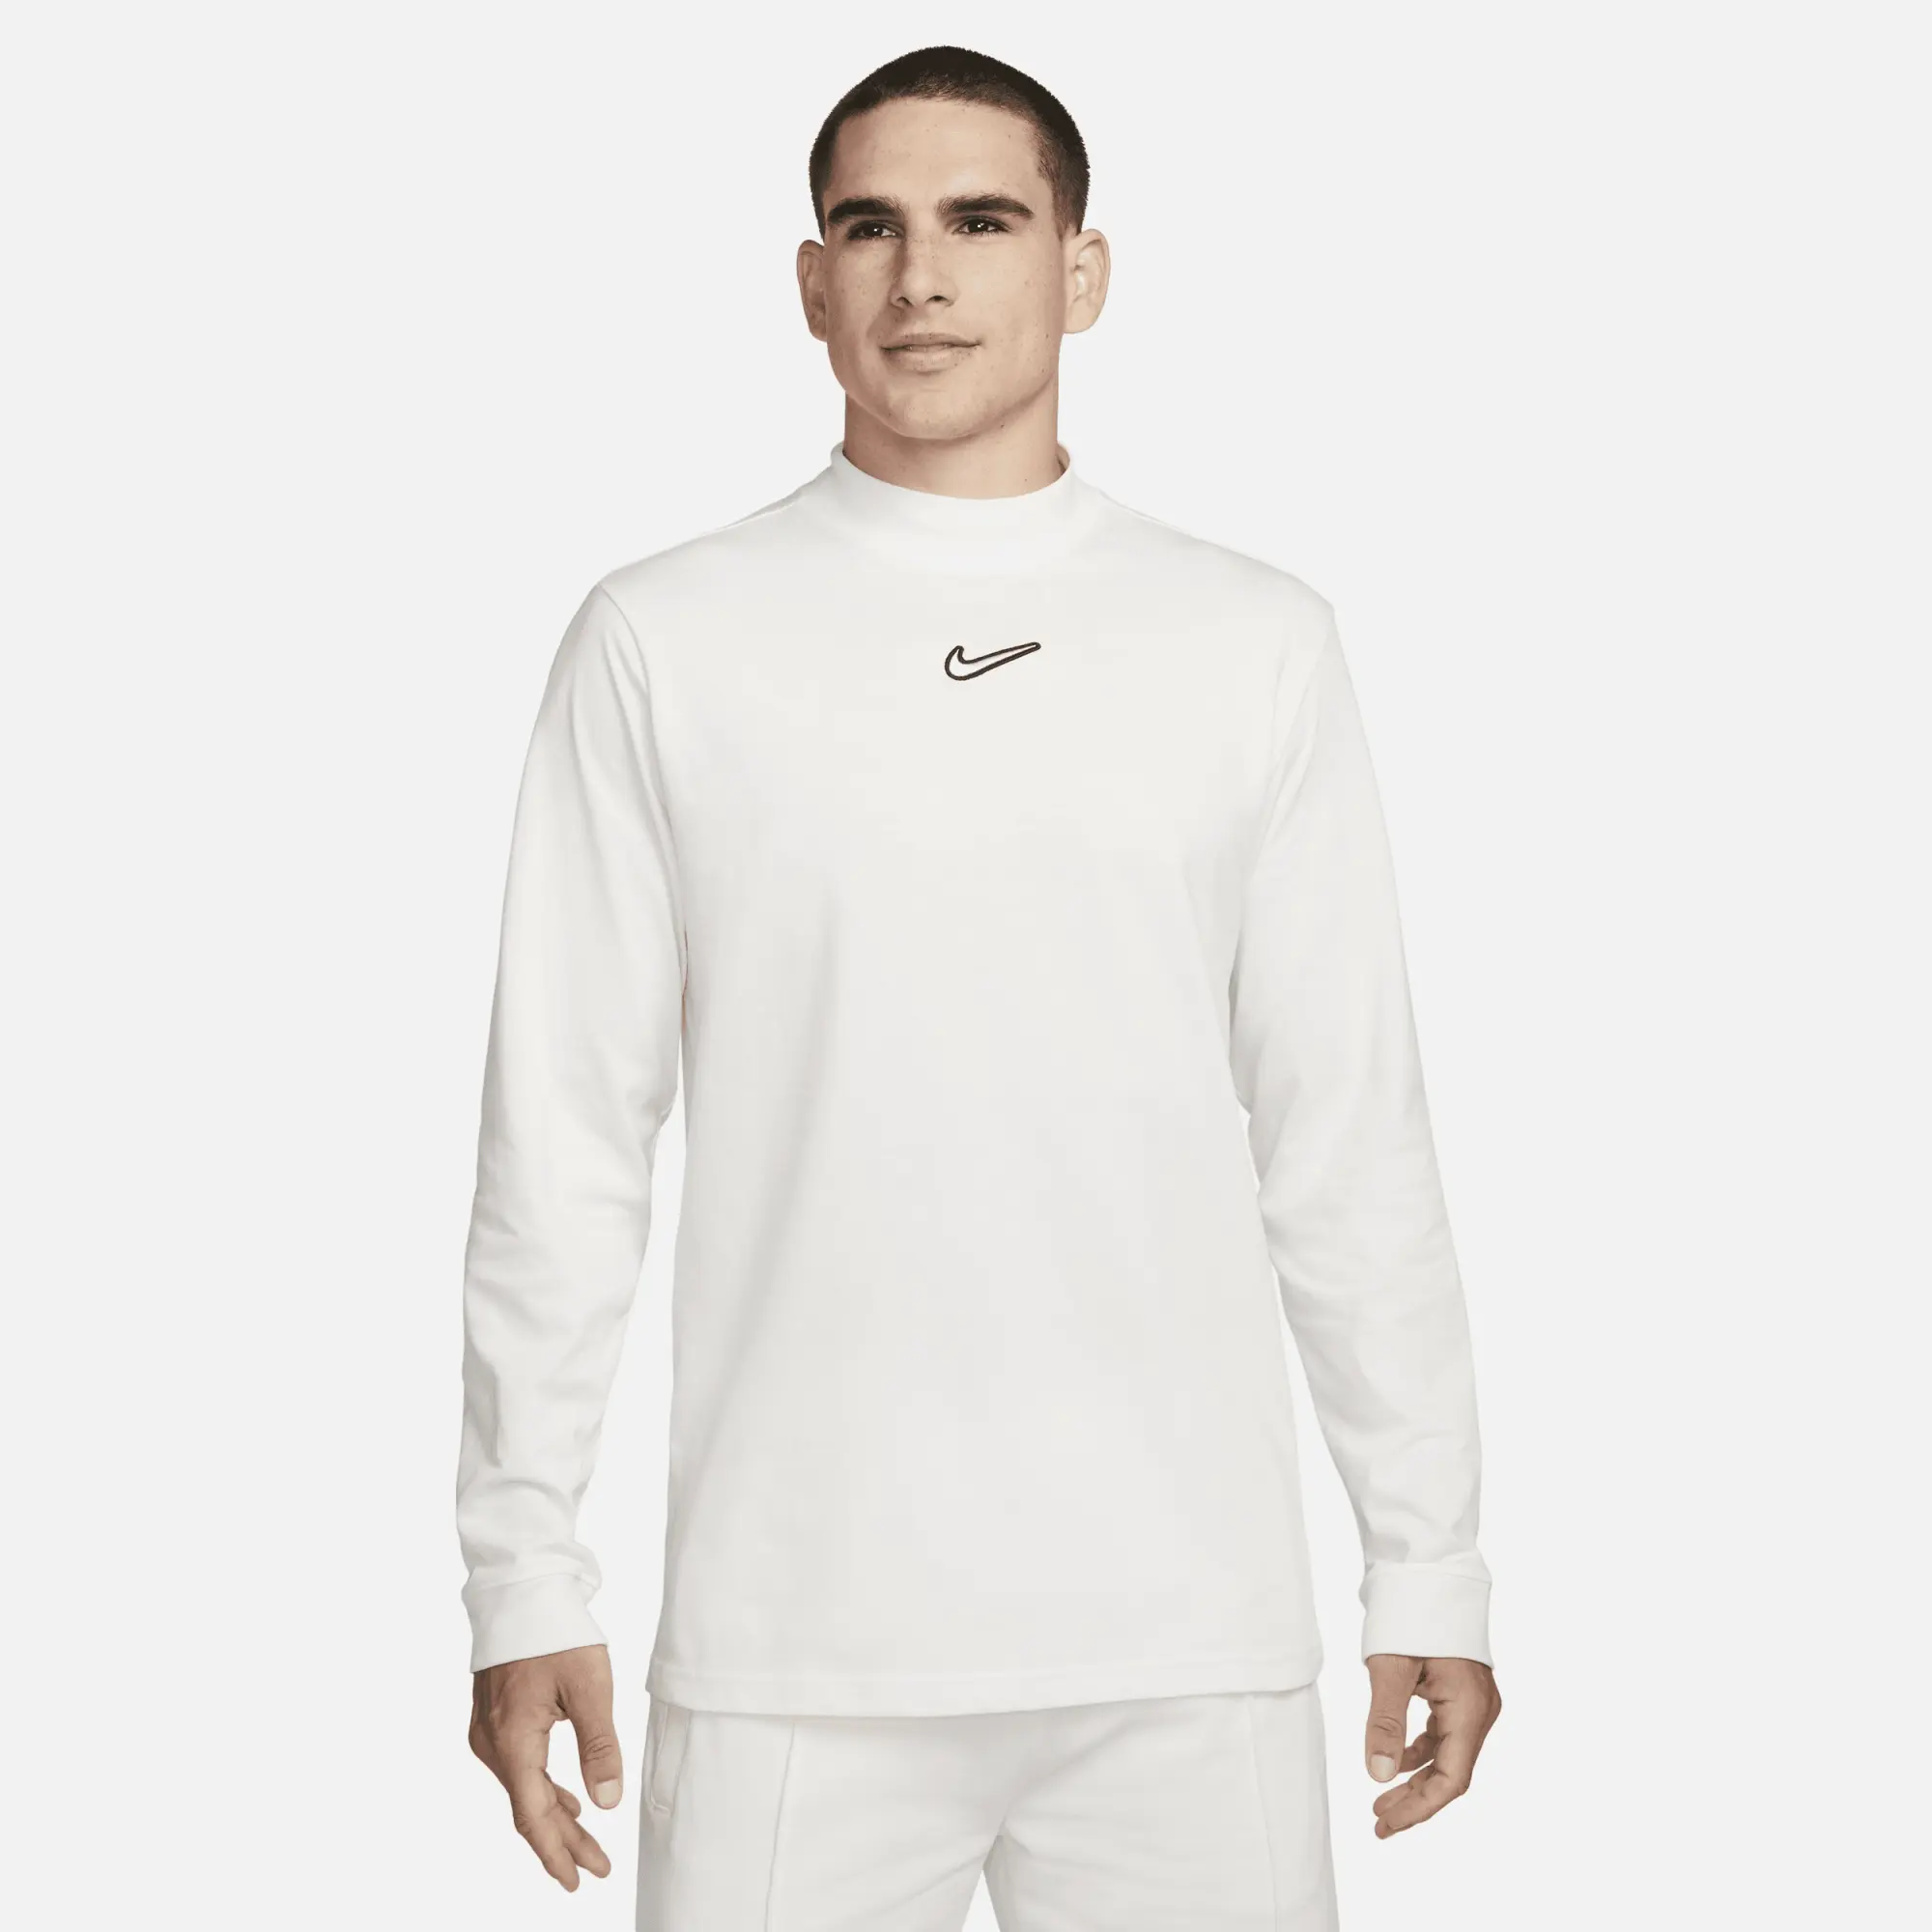 Nike T100 - White